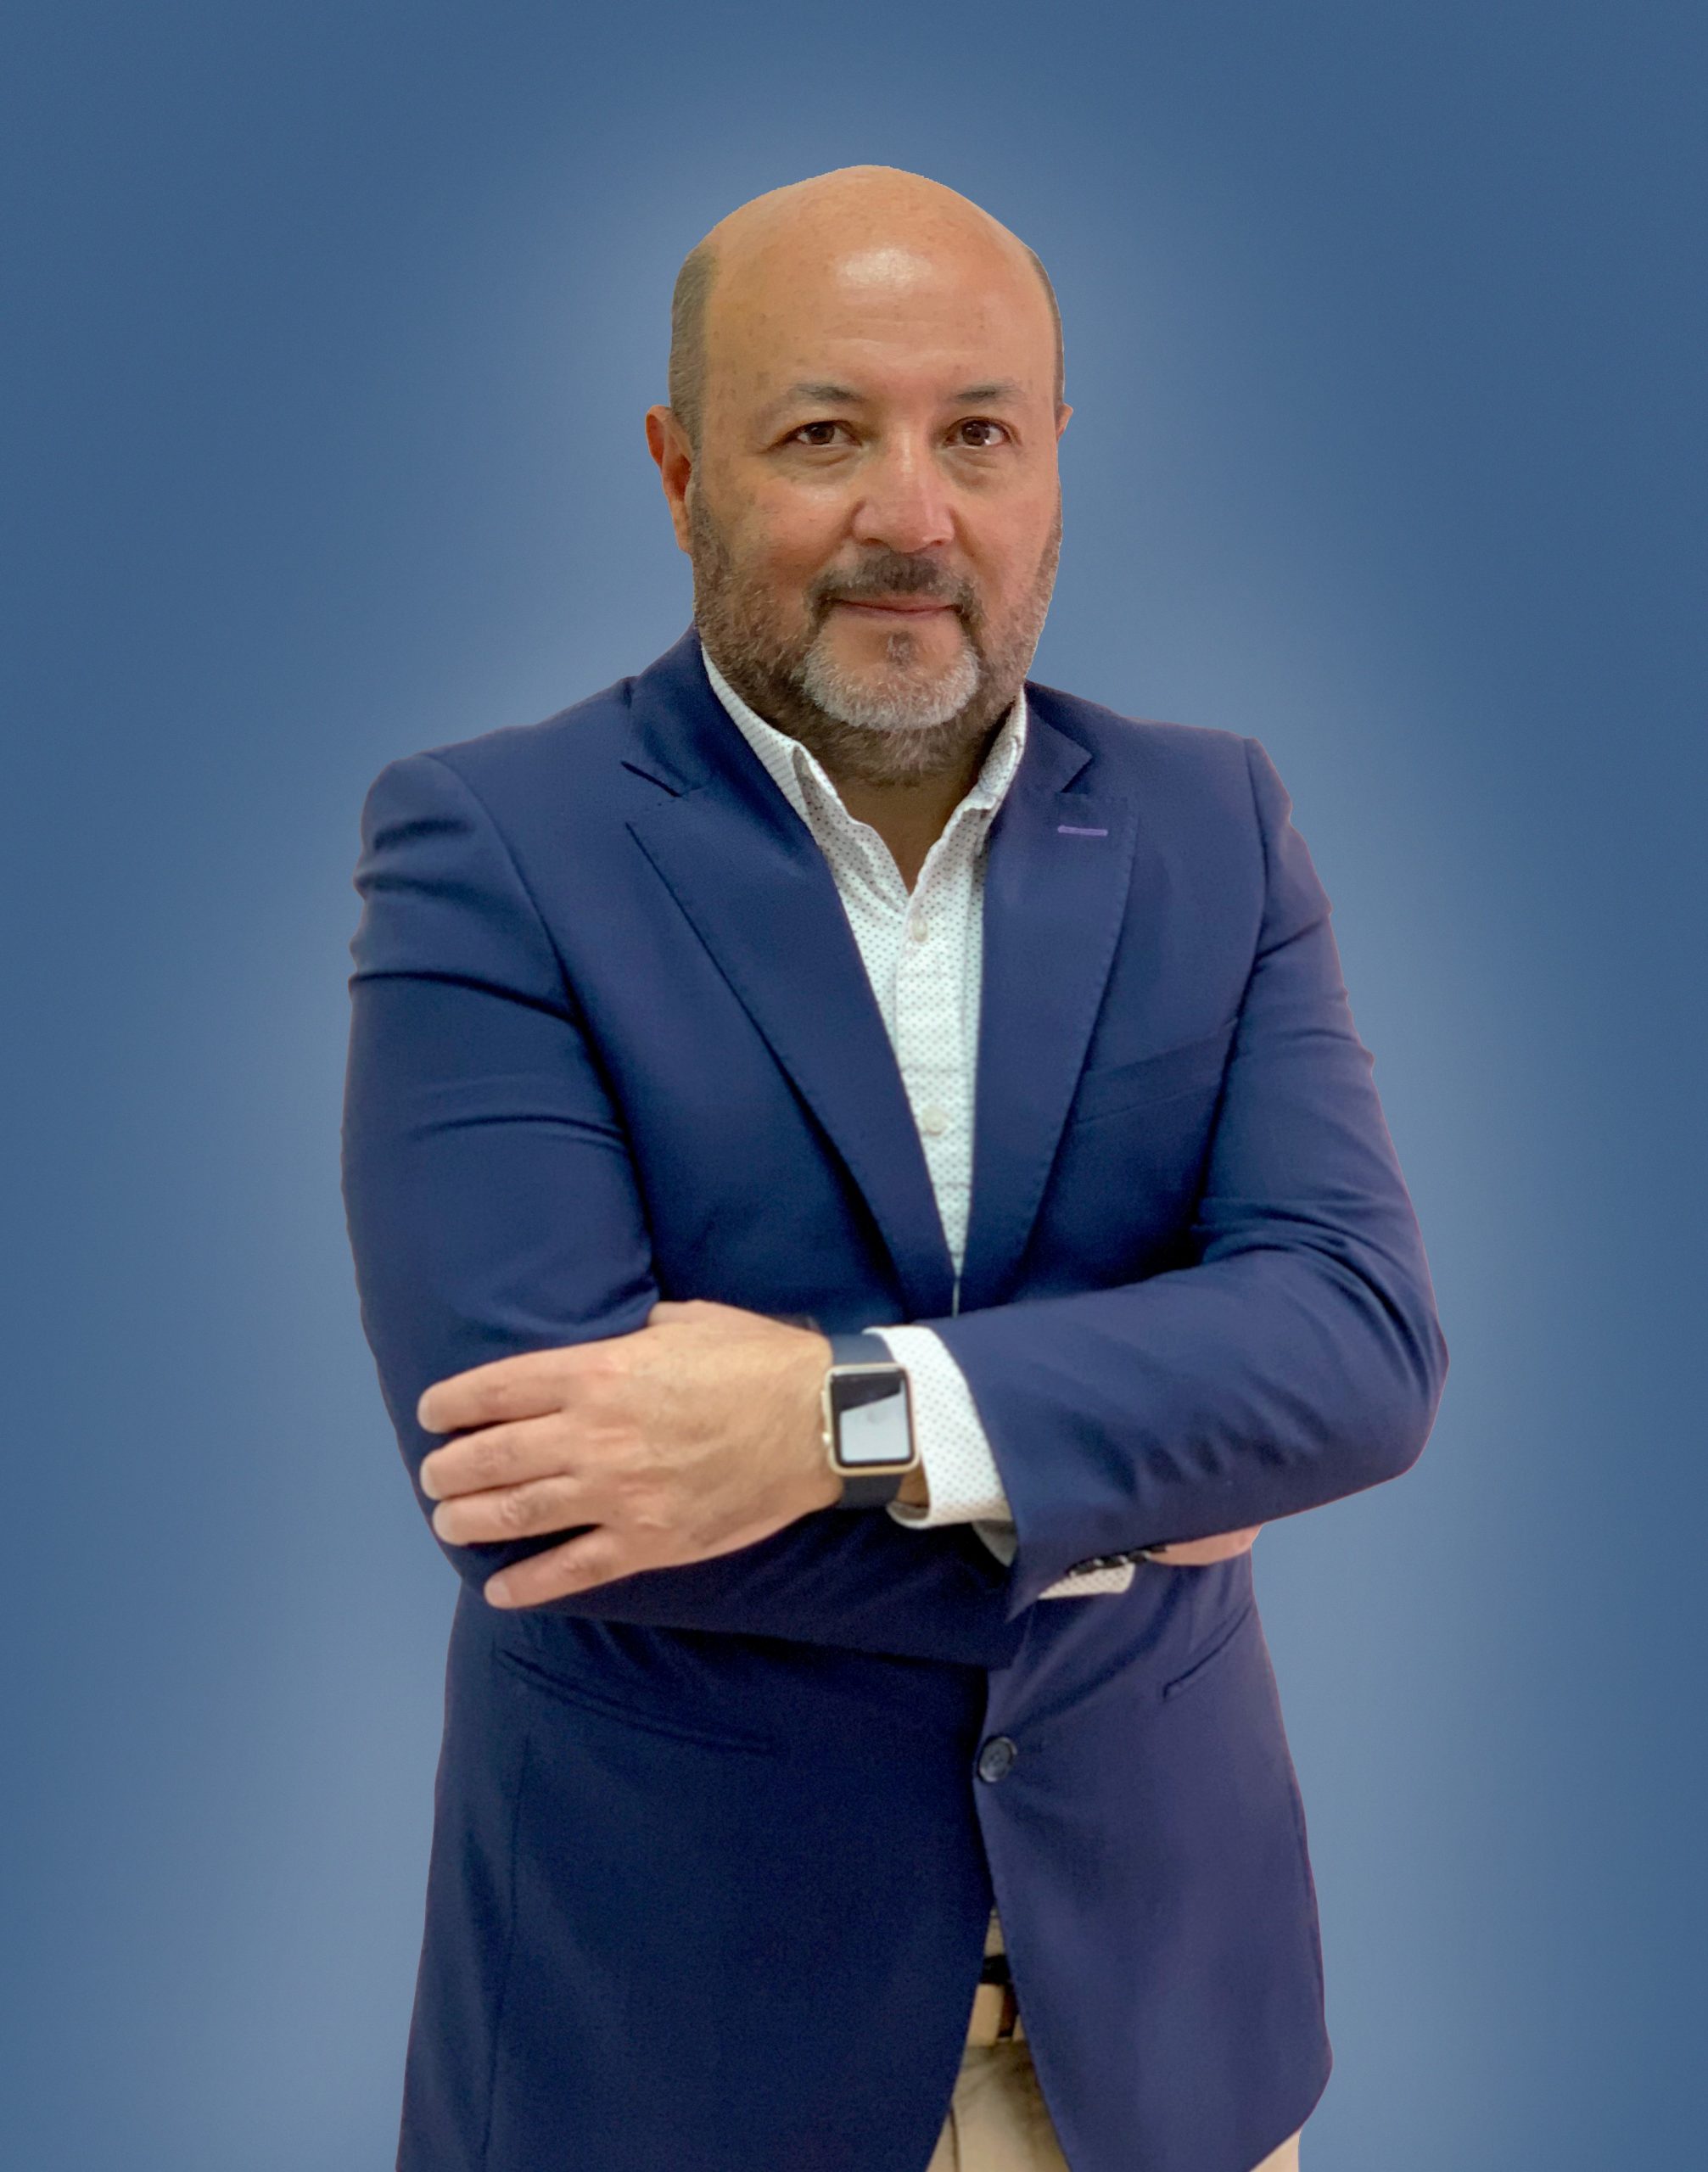 Jorge Lagos Caballero, General Manager for Novaflex